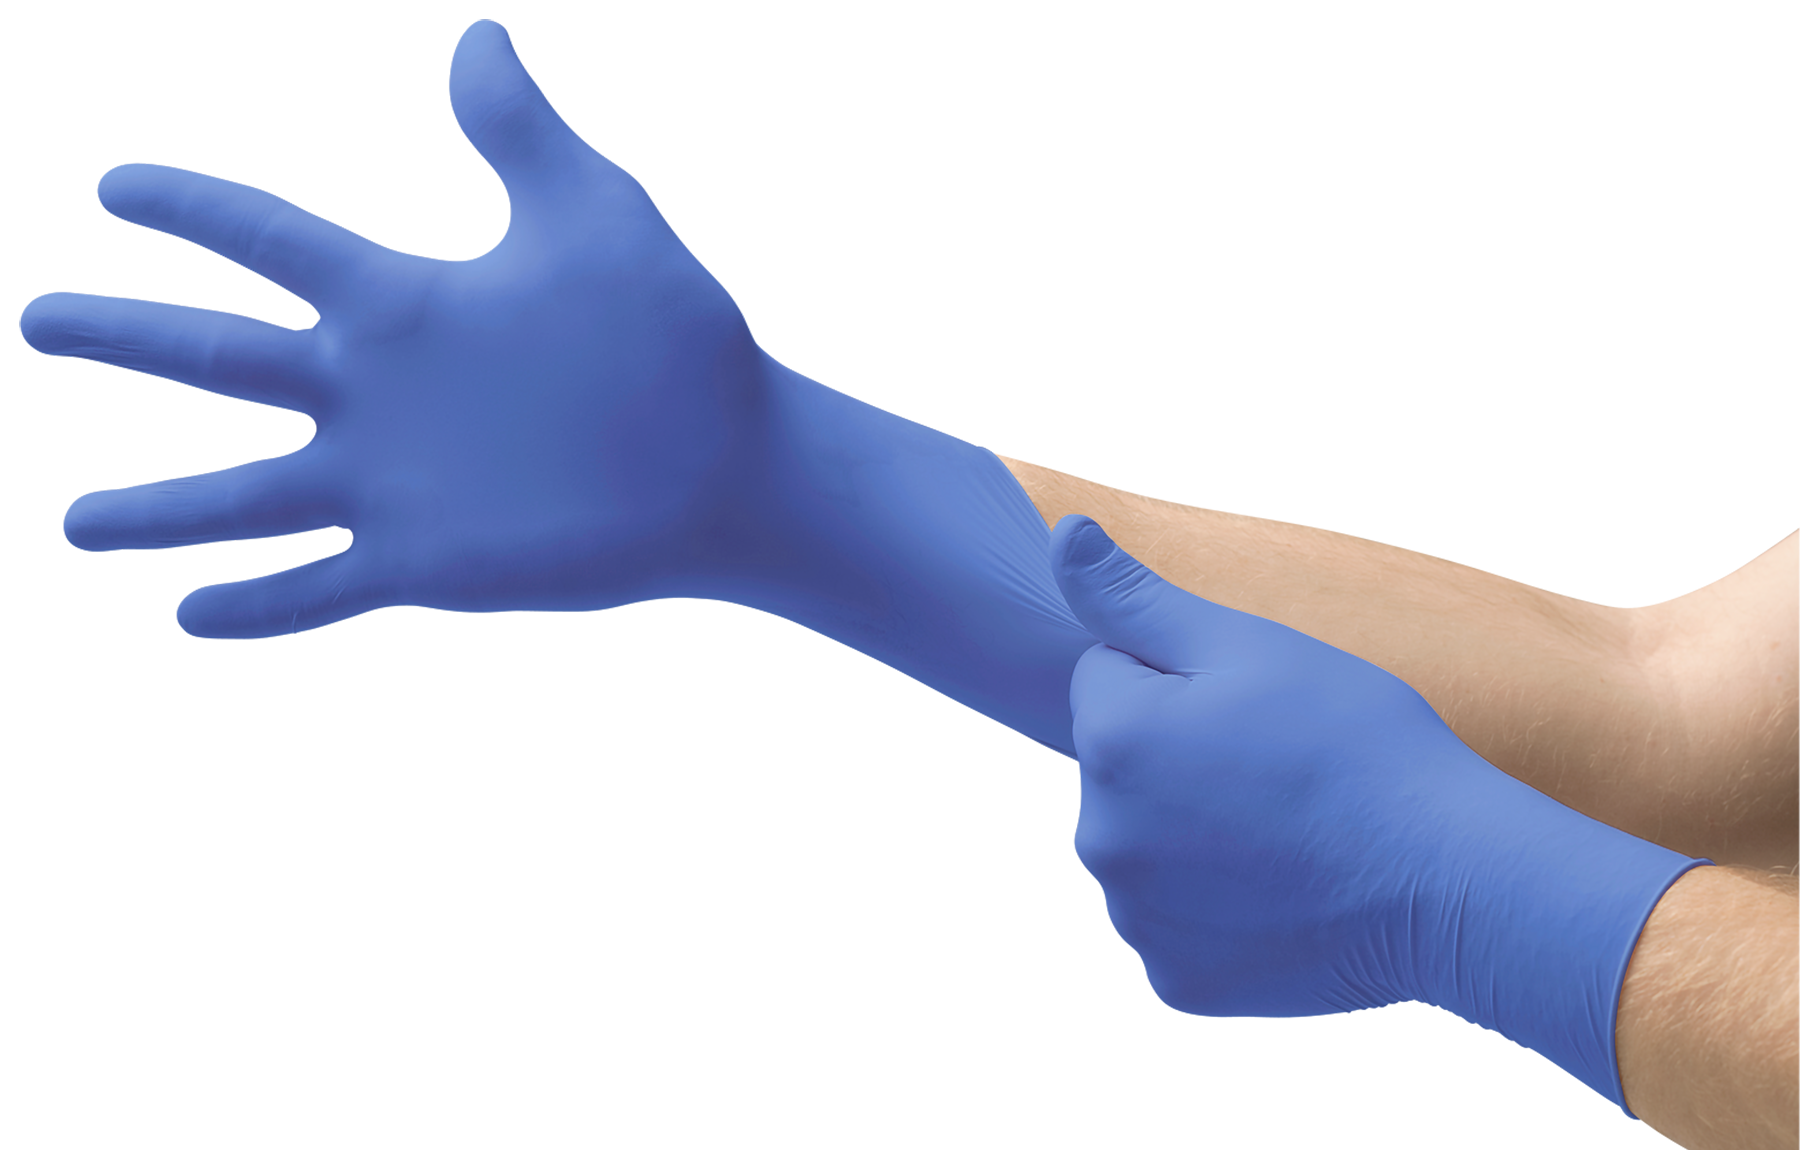 Medical Gloves Background PNG Image